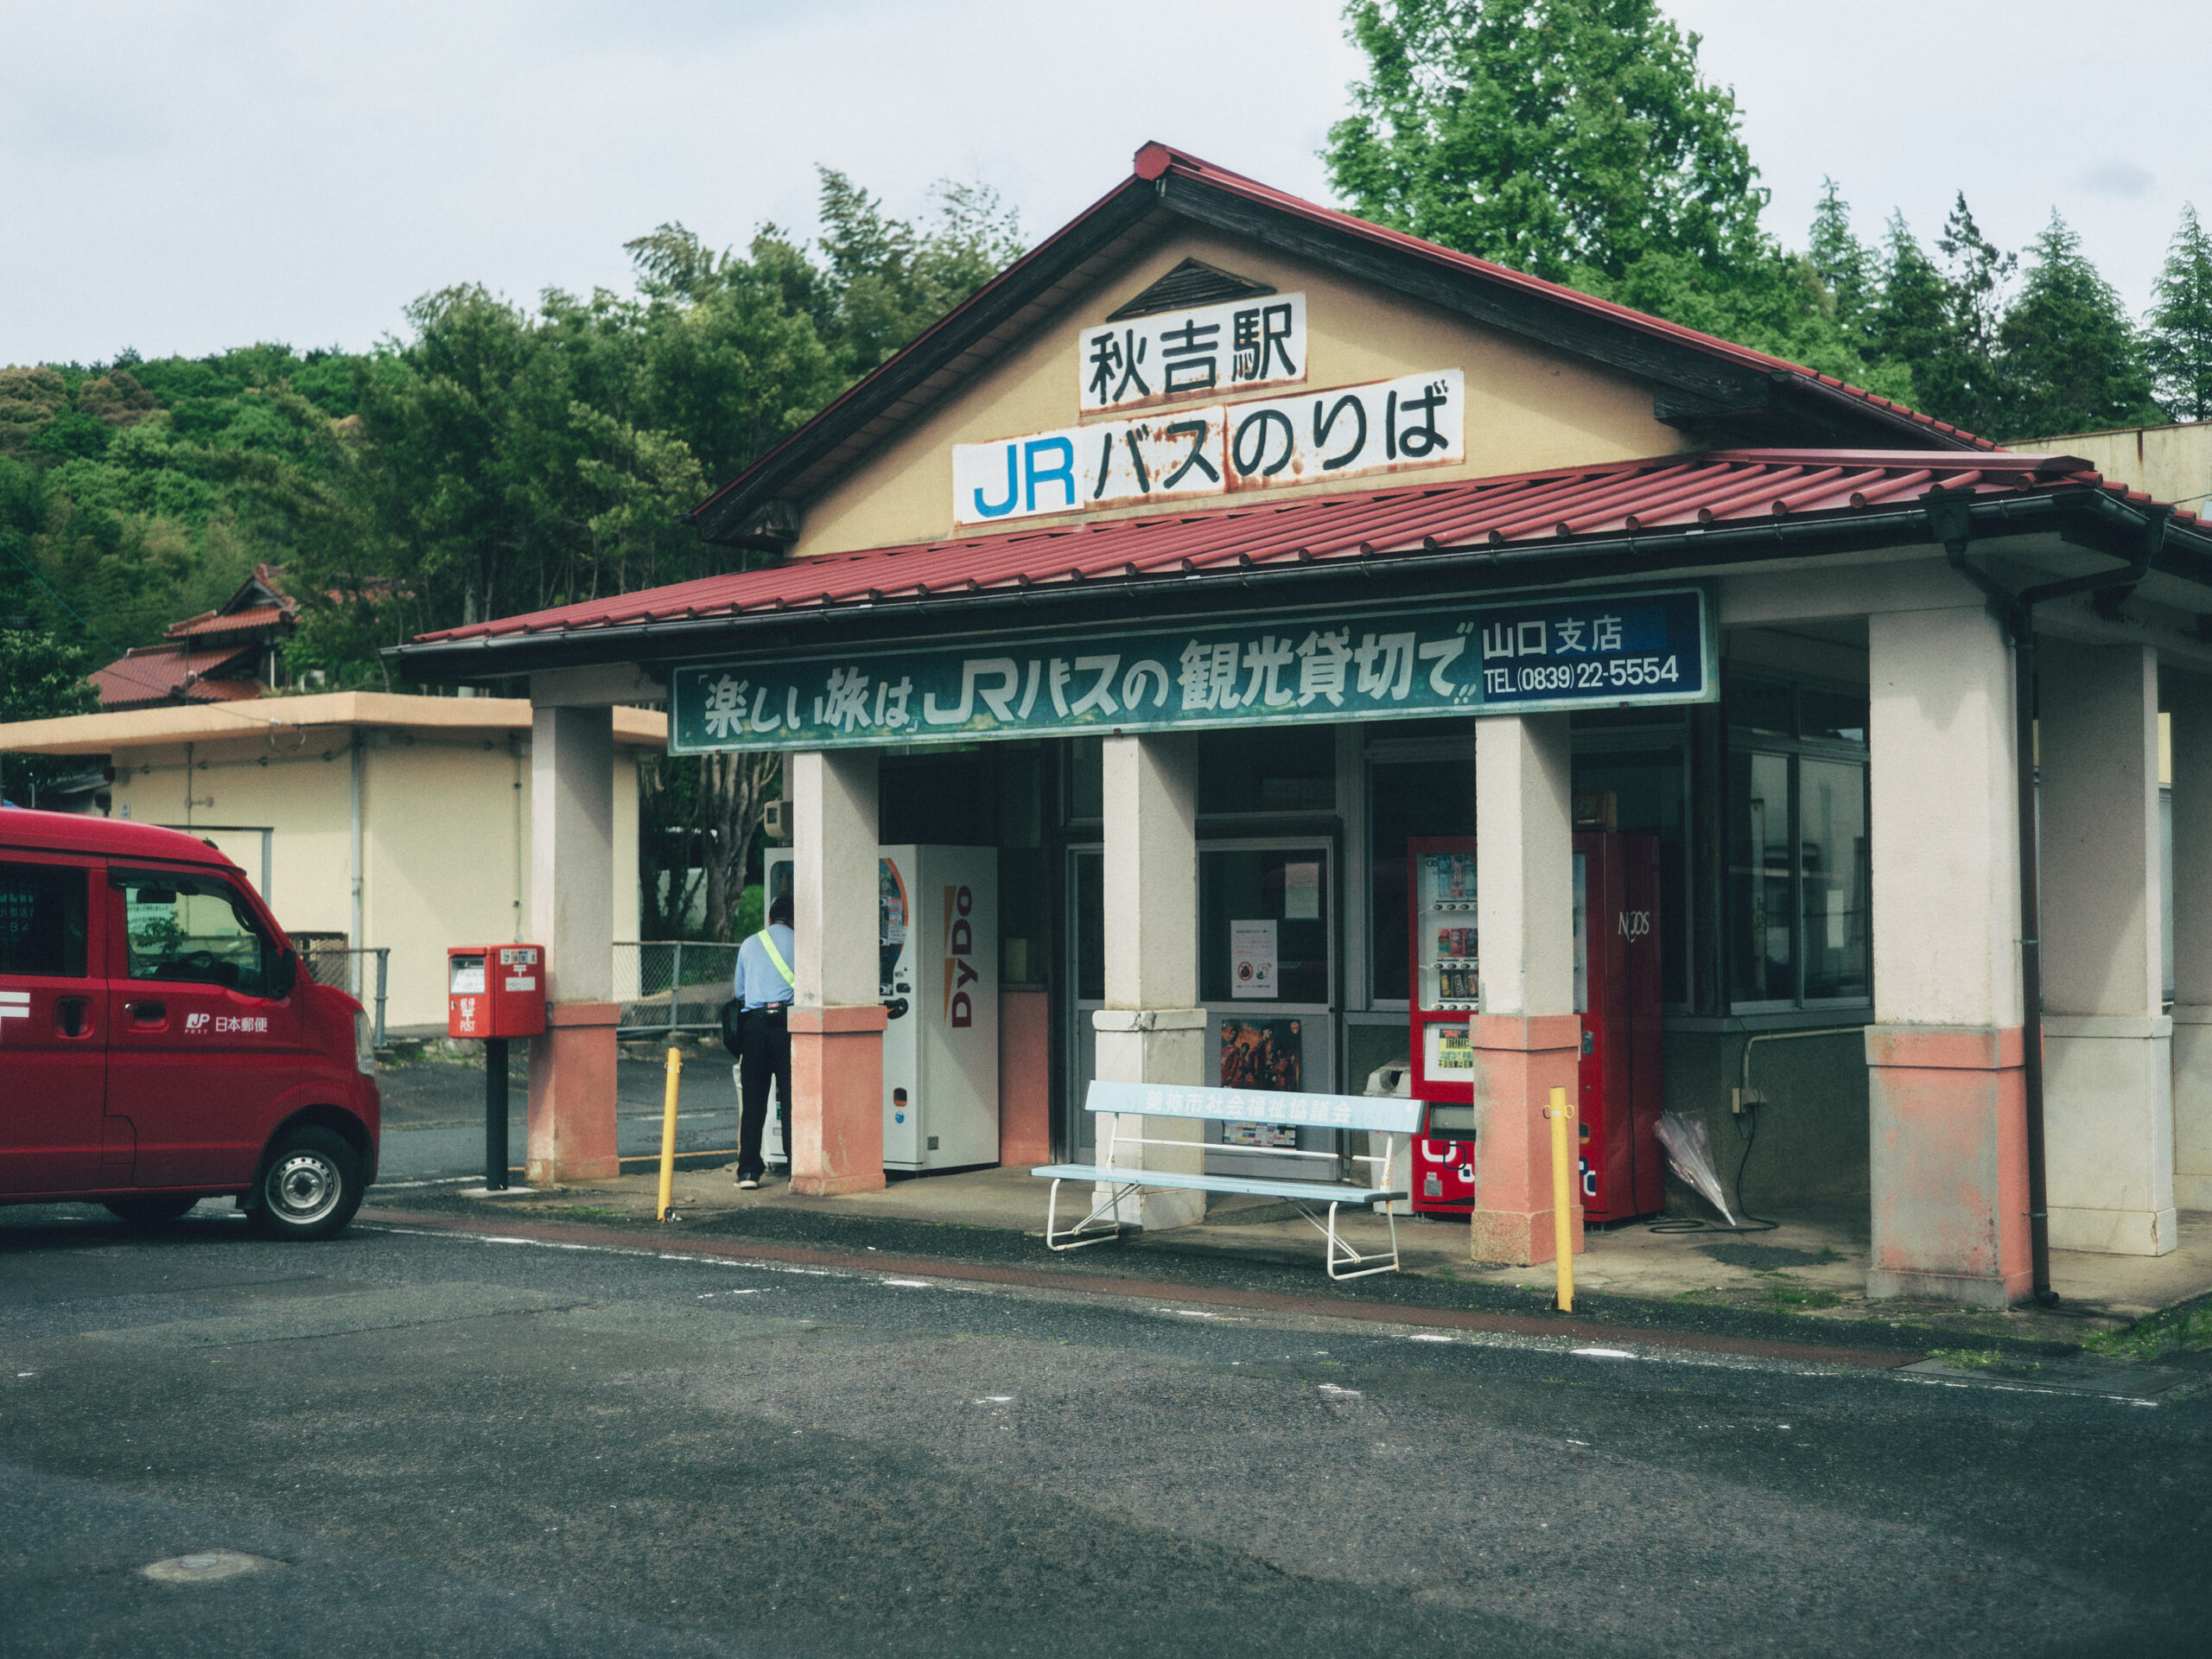 バス乗り場の秋吉駅。